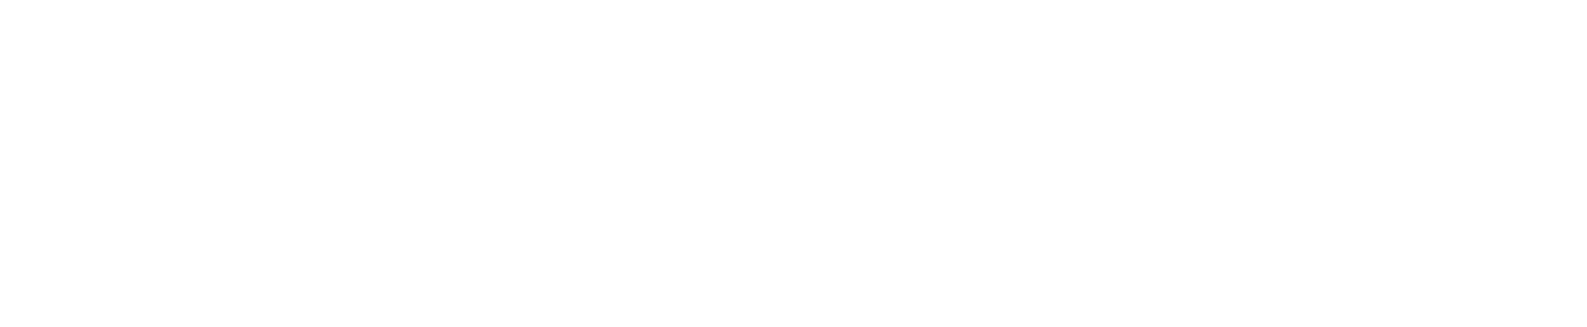 National Grid logo grand pour les fonds sombres (PNG transparent)